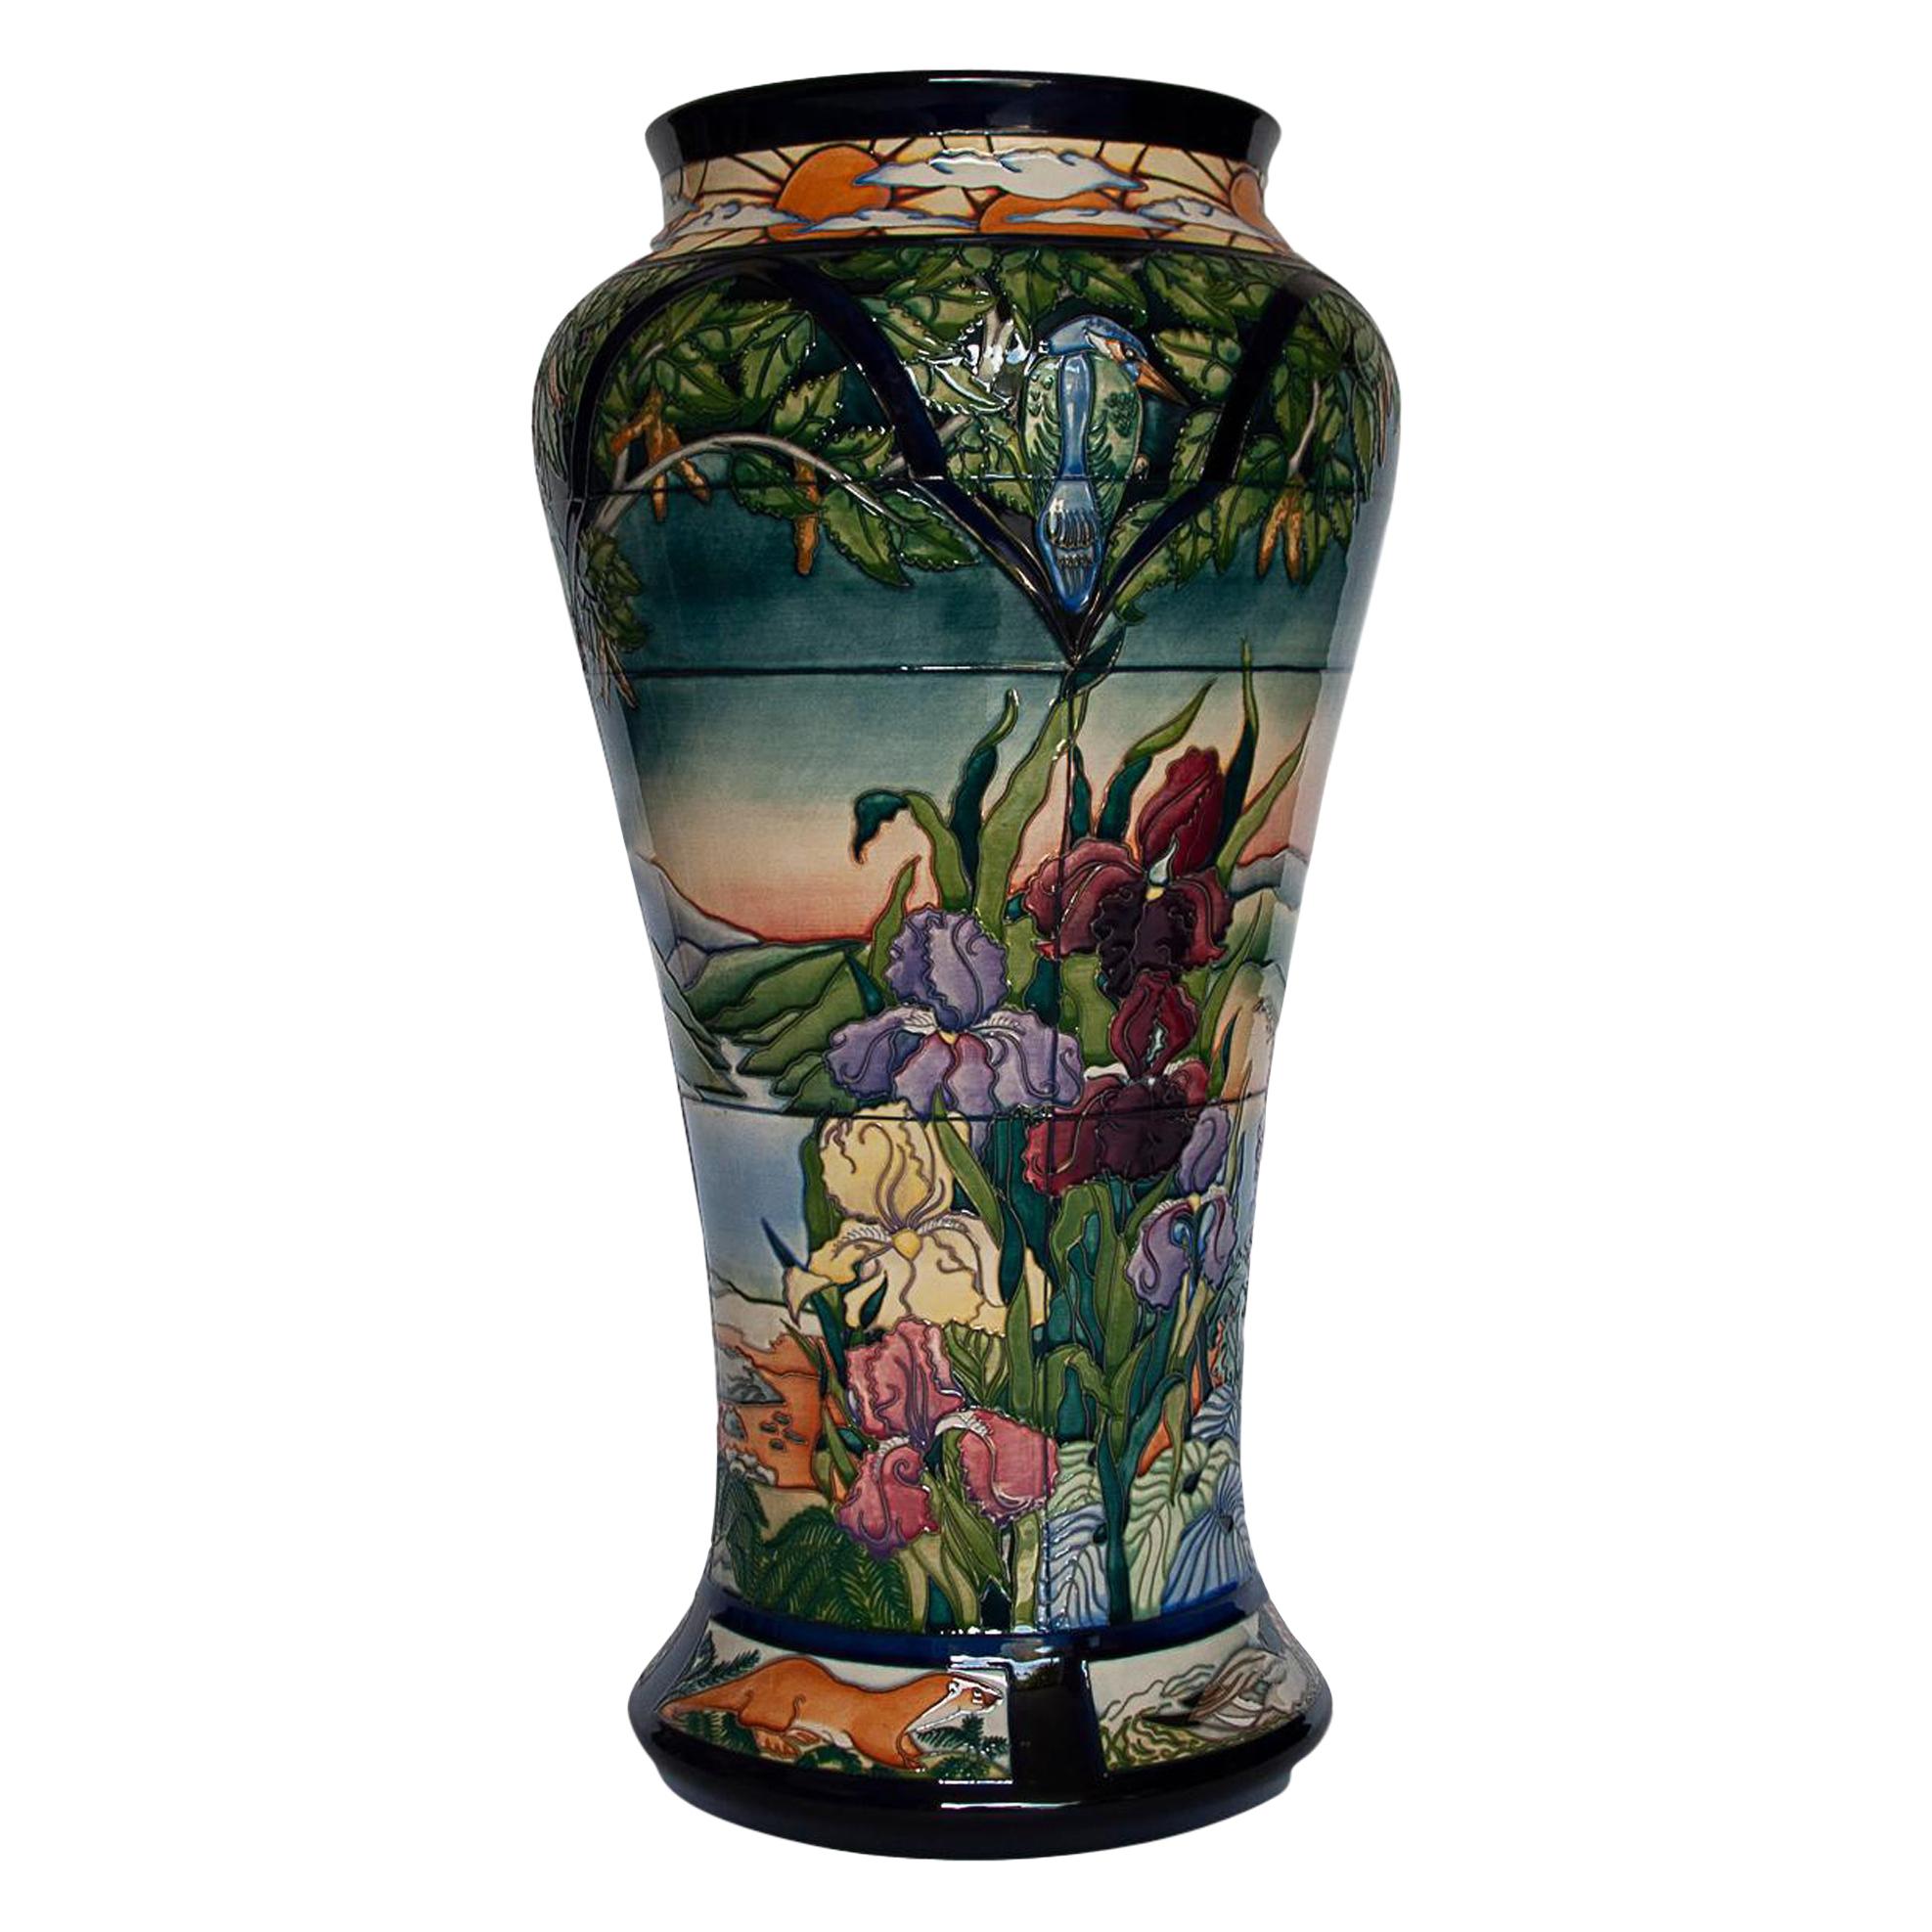 Very Rare Moorcroft "Paramore" Vase by Rachel Bishop, circa 2002